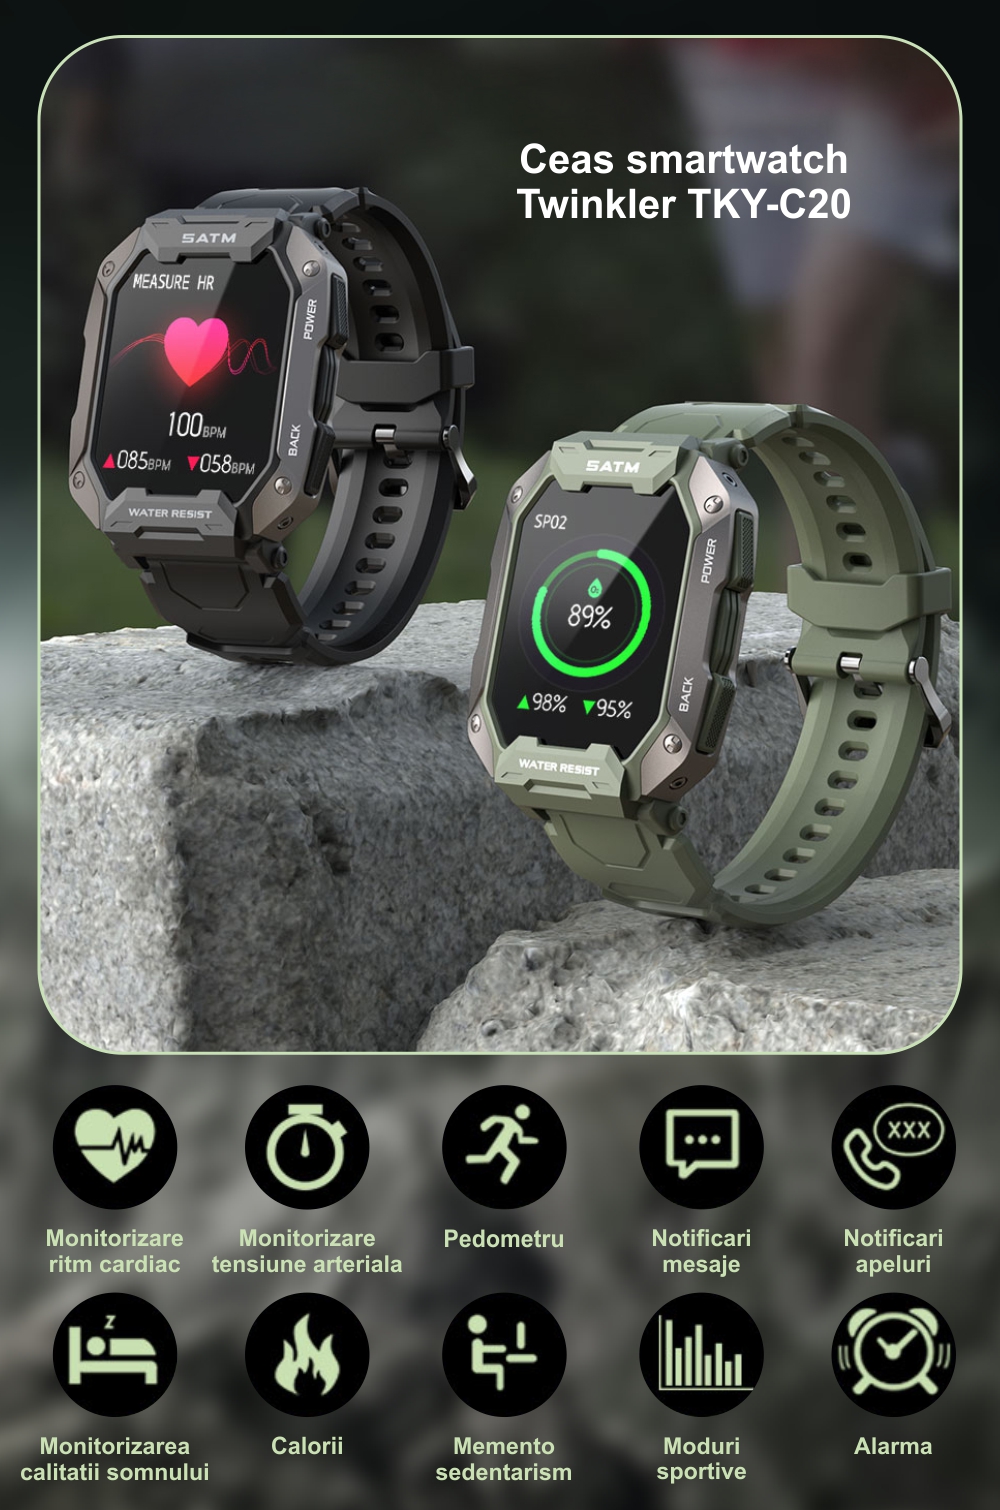 Ceas Smartwatch Twinkler TKY-C20 cu Monitorizare ritm cardiac, Tensiune arteriala, Moduri sportive, Calorii, Pedometru, Verde camuflaj